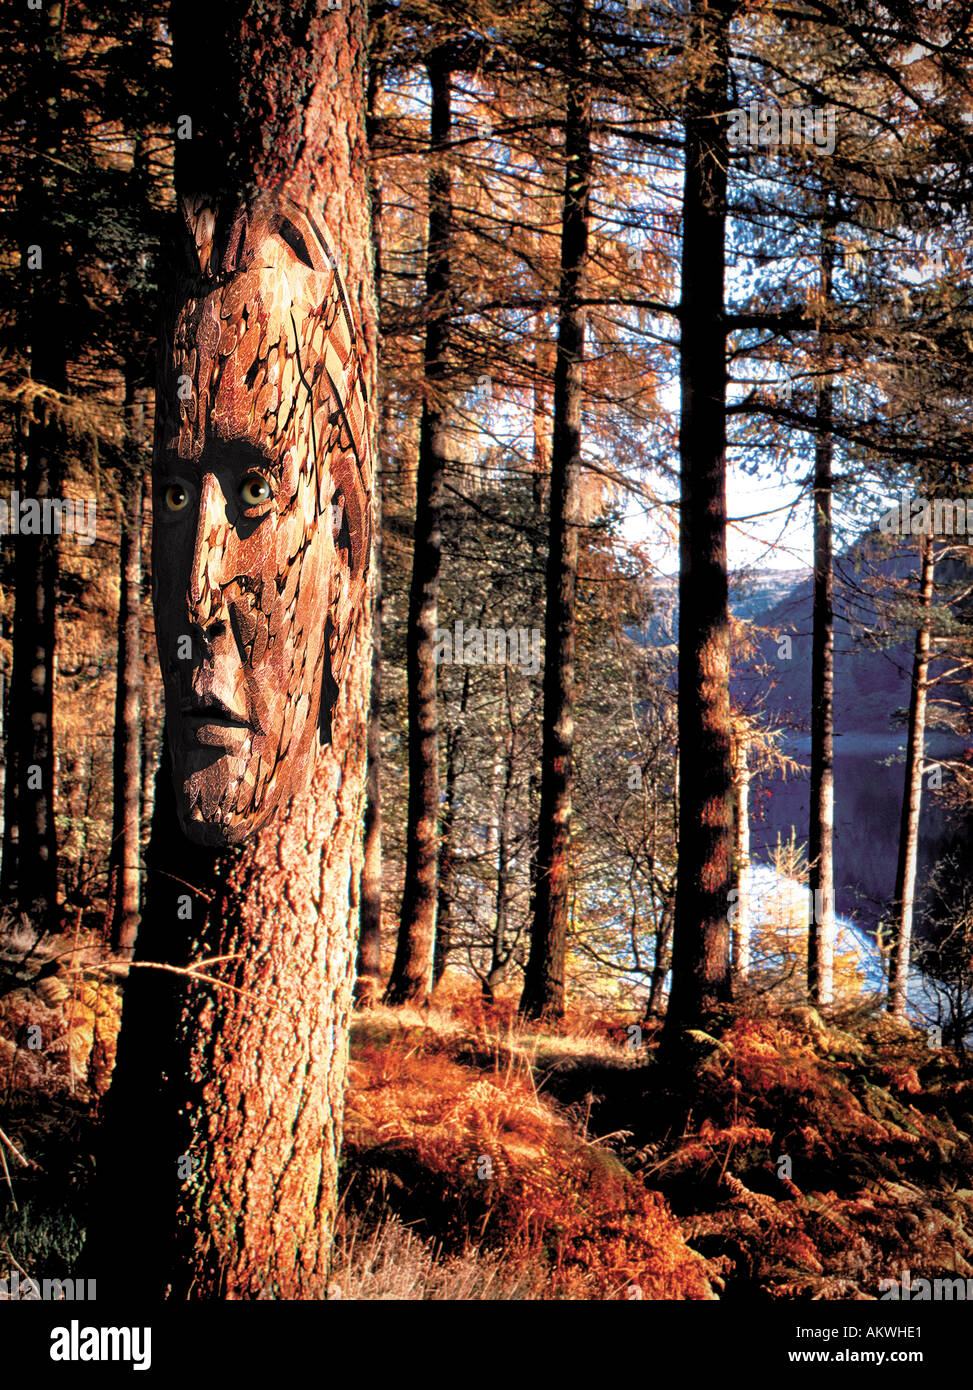 Hombre rostro tallado en el lado del concepto de bosque de pinos en la ilustración de la foto Foto de stock